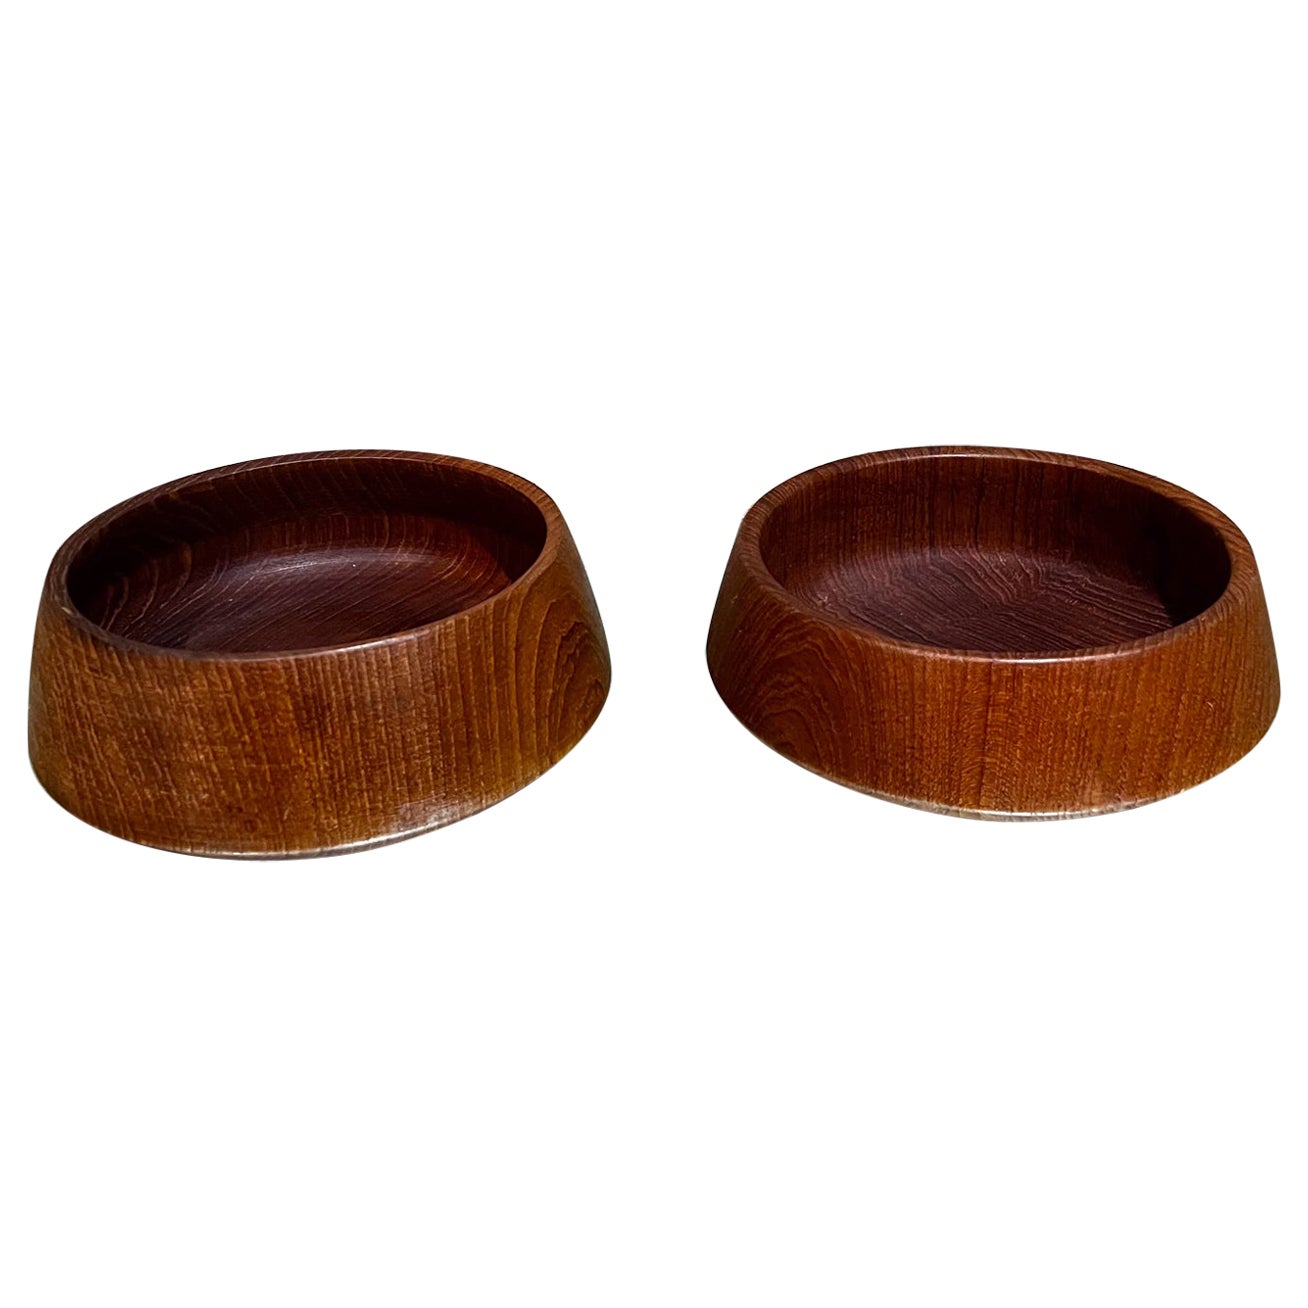 1960s Pair of Teak Wood Bowls After Dansk Designs Jens Quistgaard For Sale